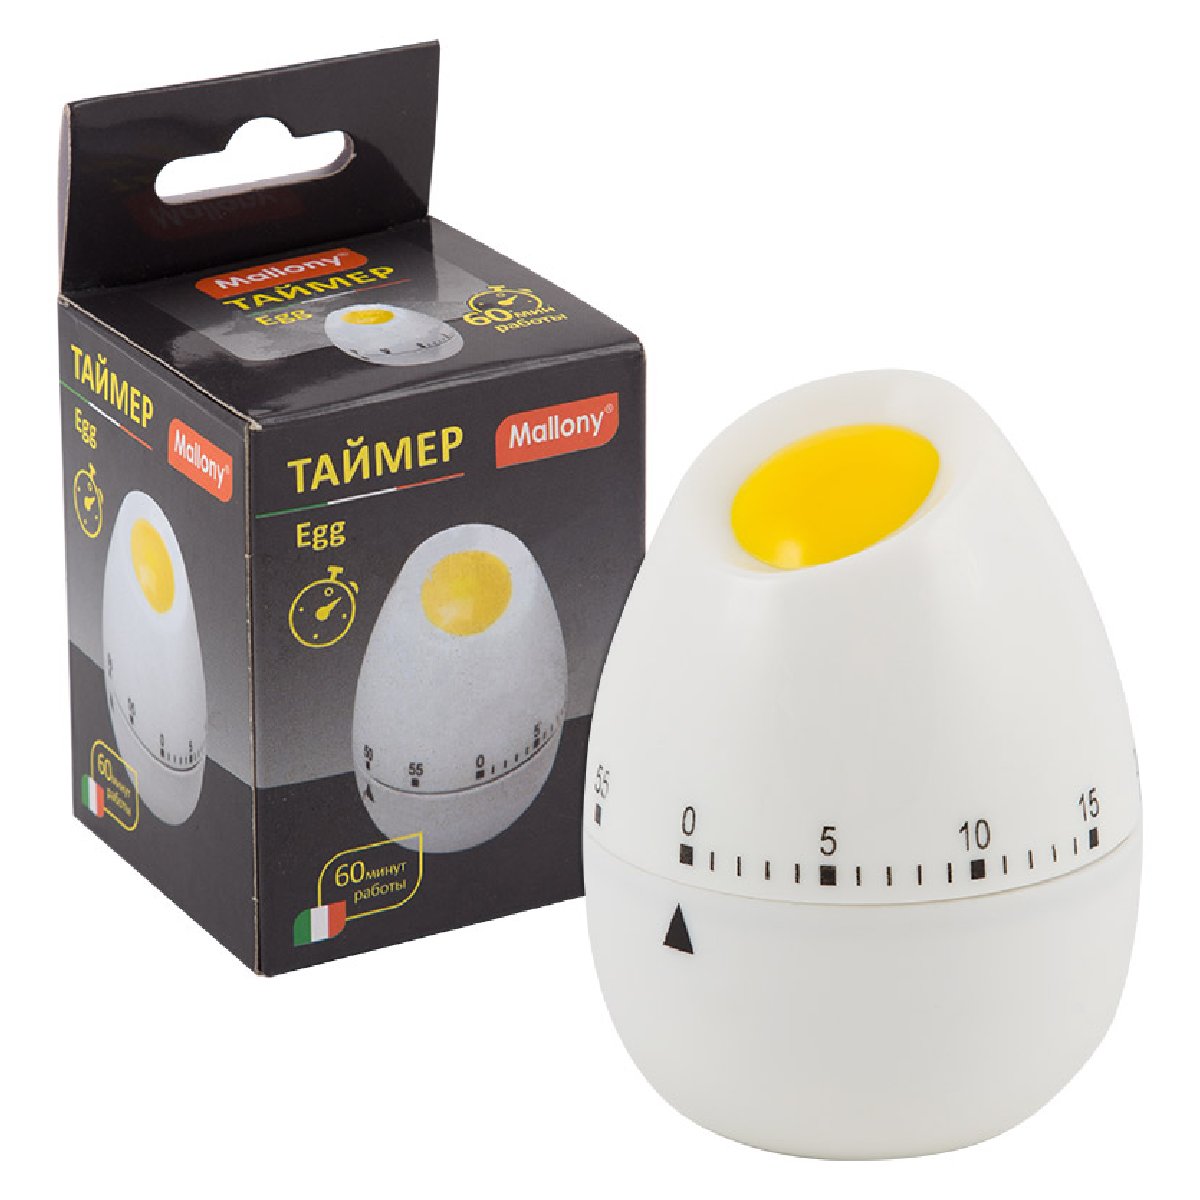   Egg (003619)